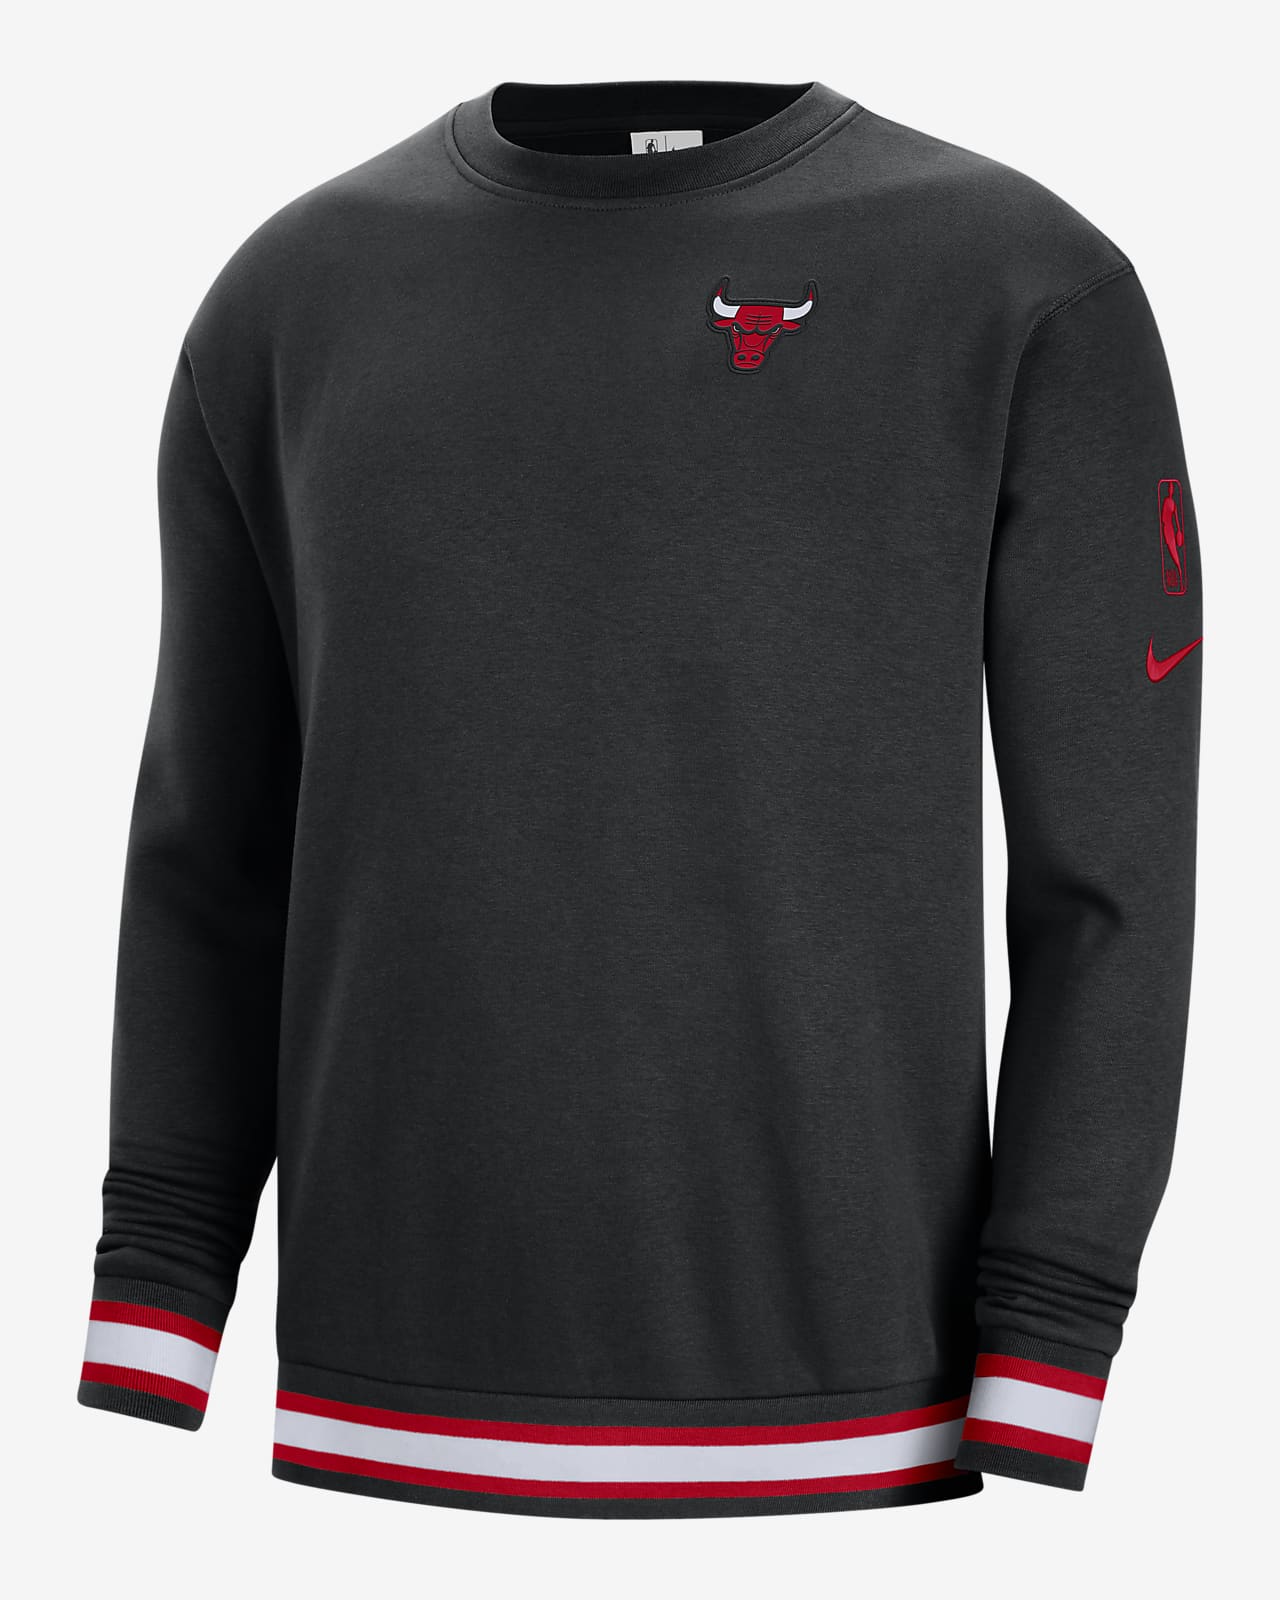 Chicago Bulls Courtside Men's Nike NBA Fleece Sweatshirt. Nike BG